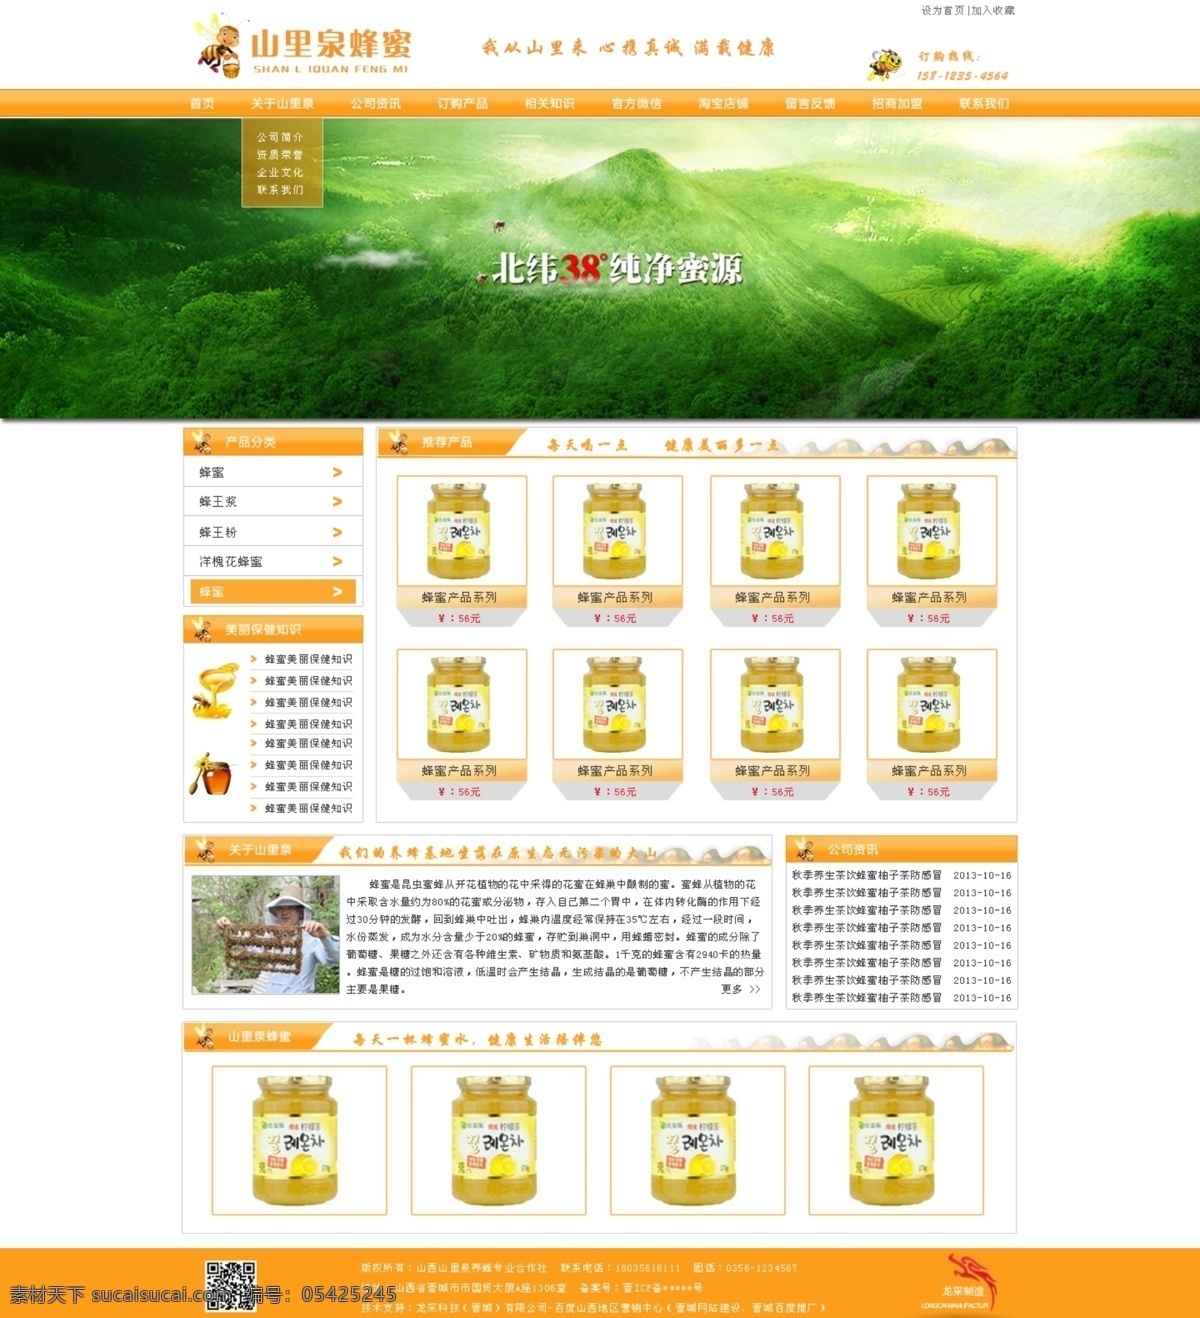 山里泉蜂蜜 蜂蜜网站 食品网站